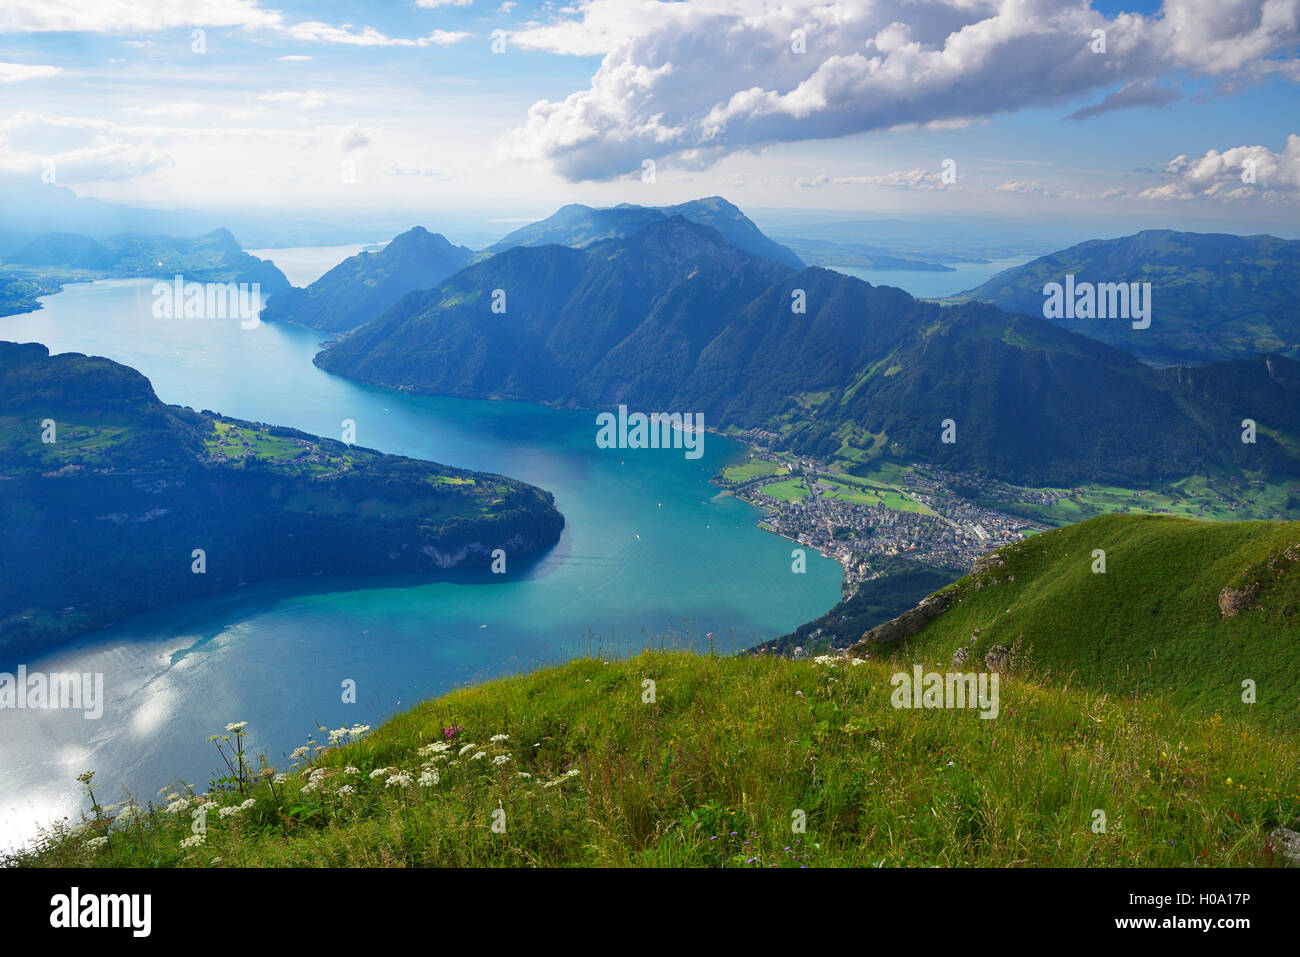 Vista desde el Fronalpstock, Rigi y detrás del lago de Lucerna, Stoos, cantón de Schwyz, Suiza Foto de stock